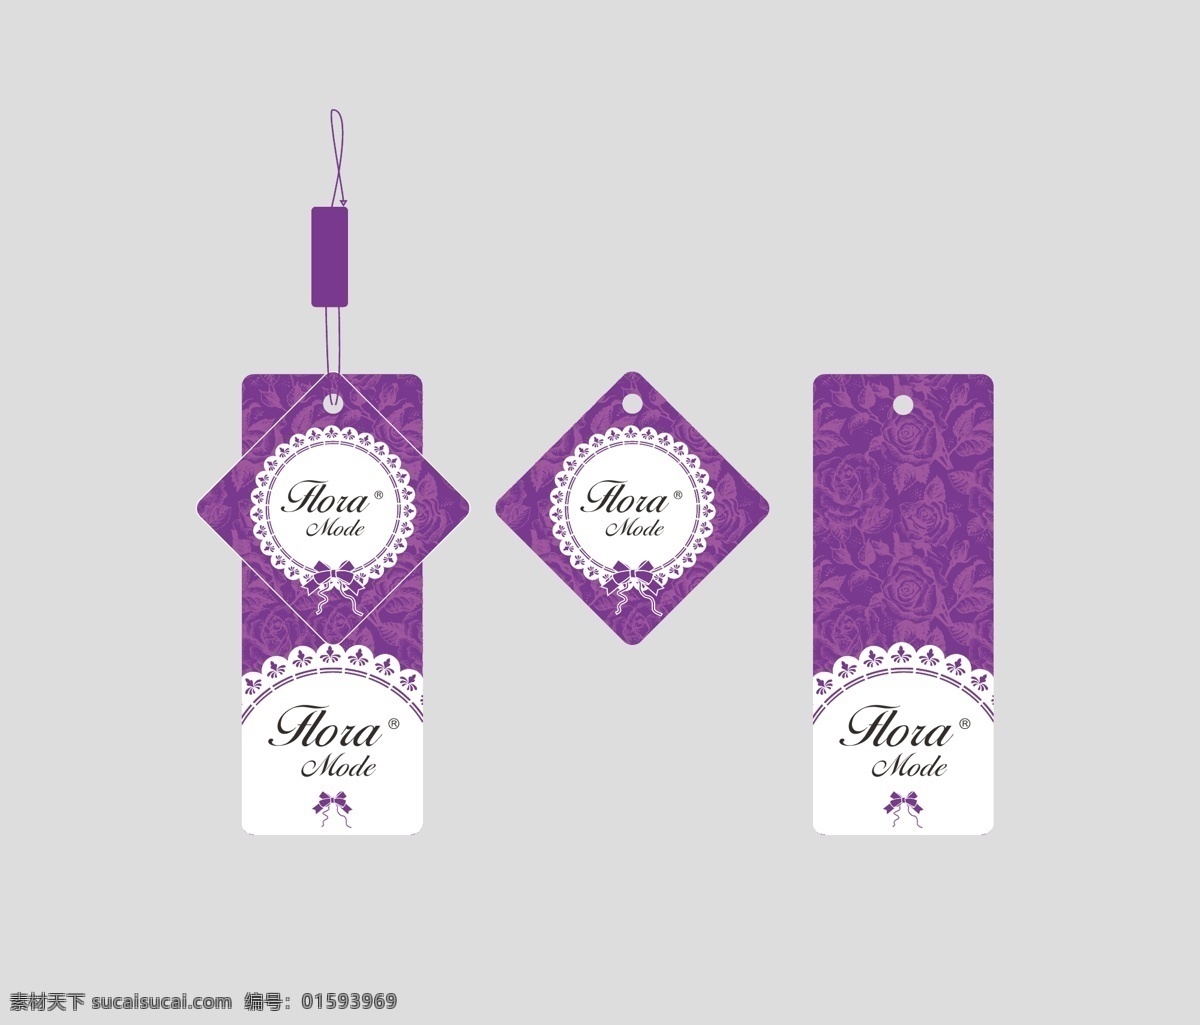 紫色 服装 吊牌 服装吊牌 吊卡设计 欧式吊牌 花纹 其他设计 矢量